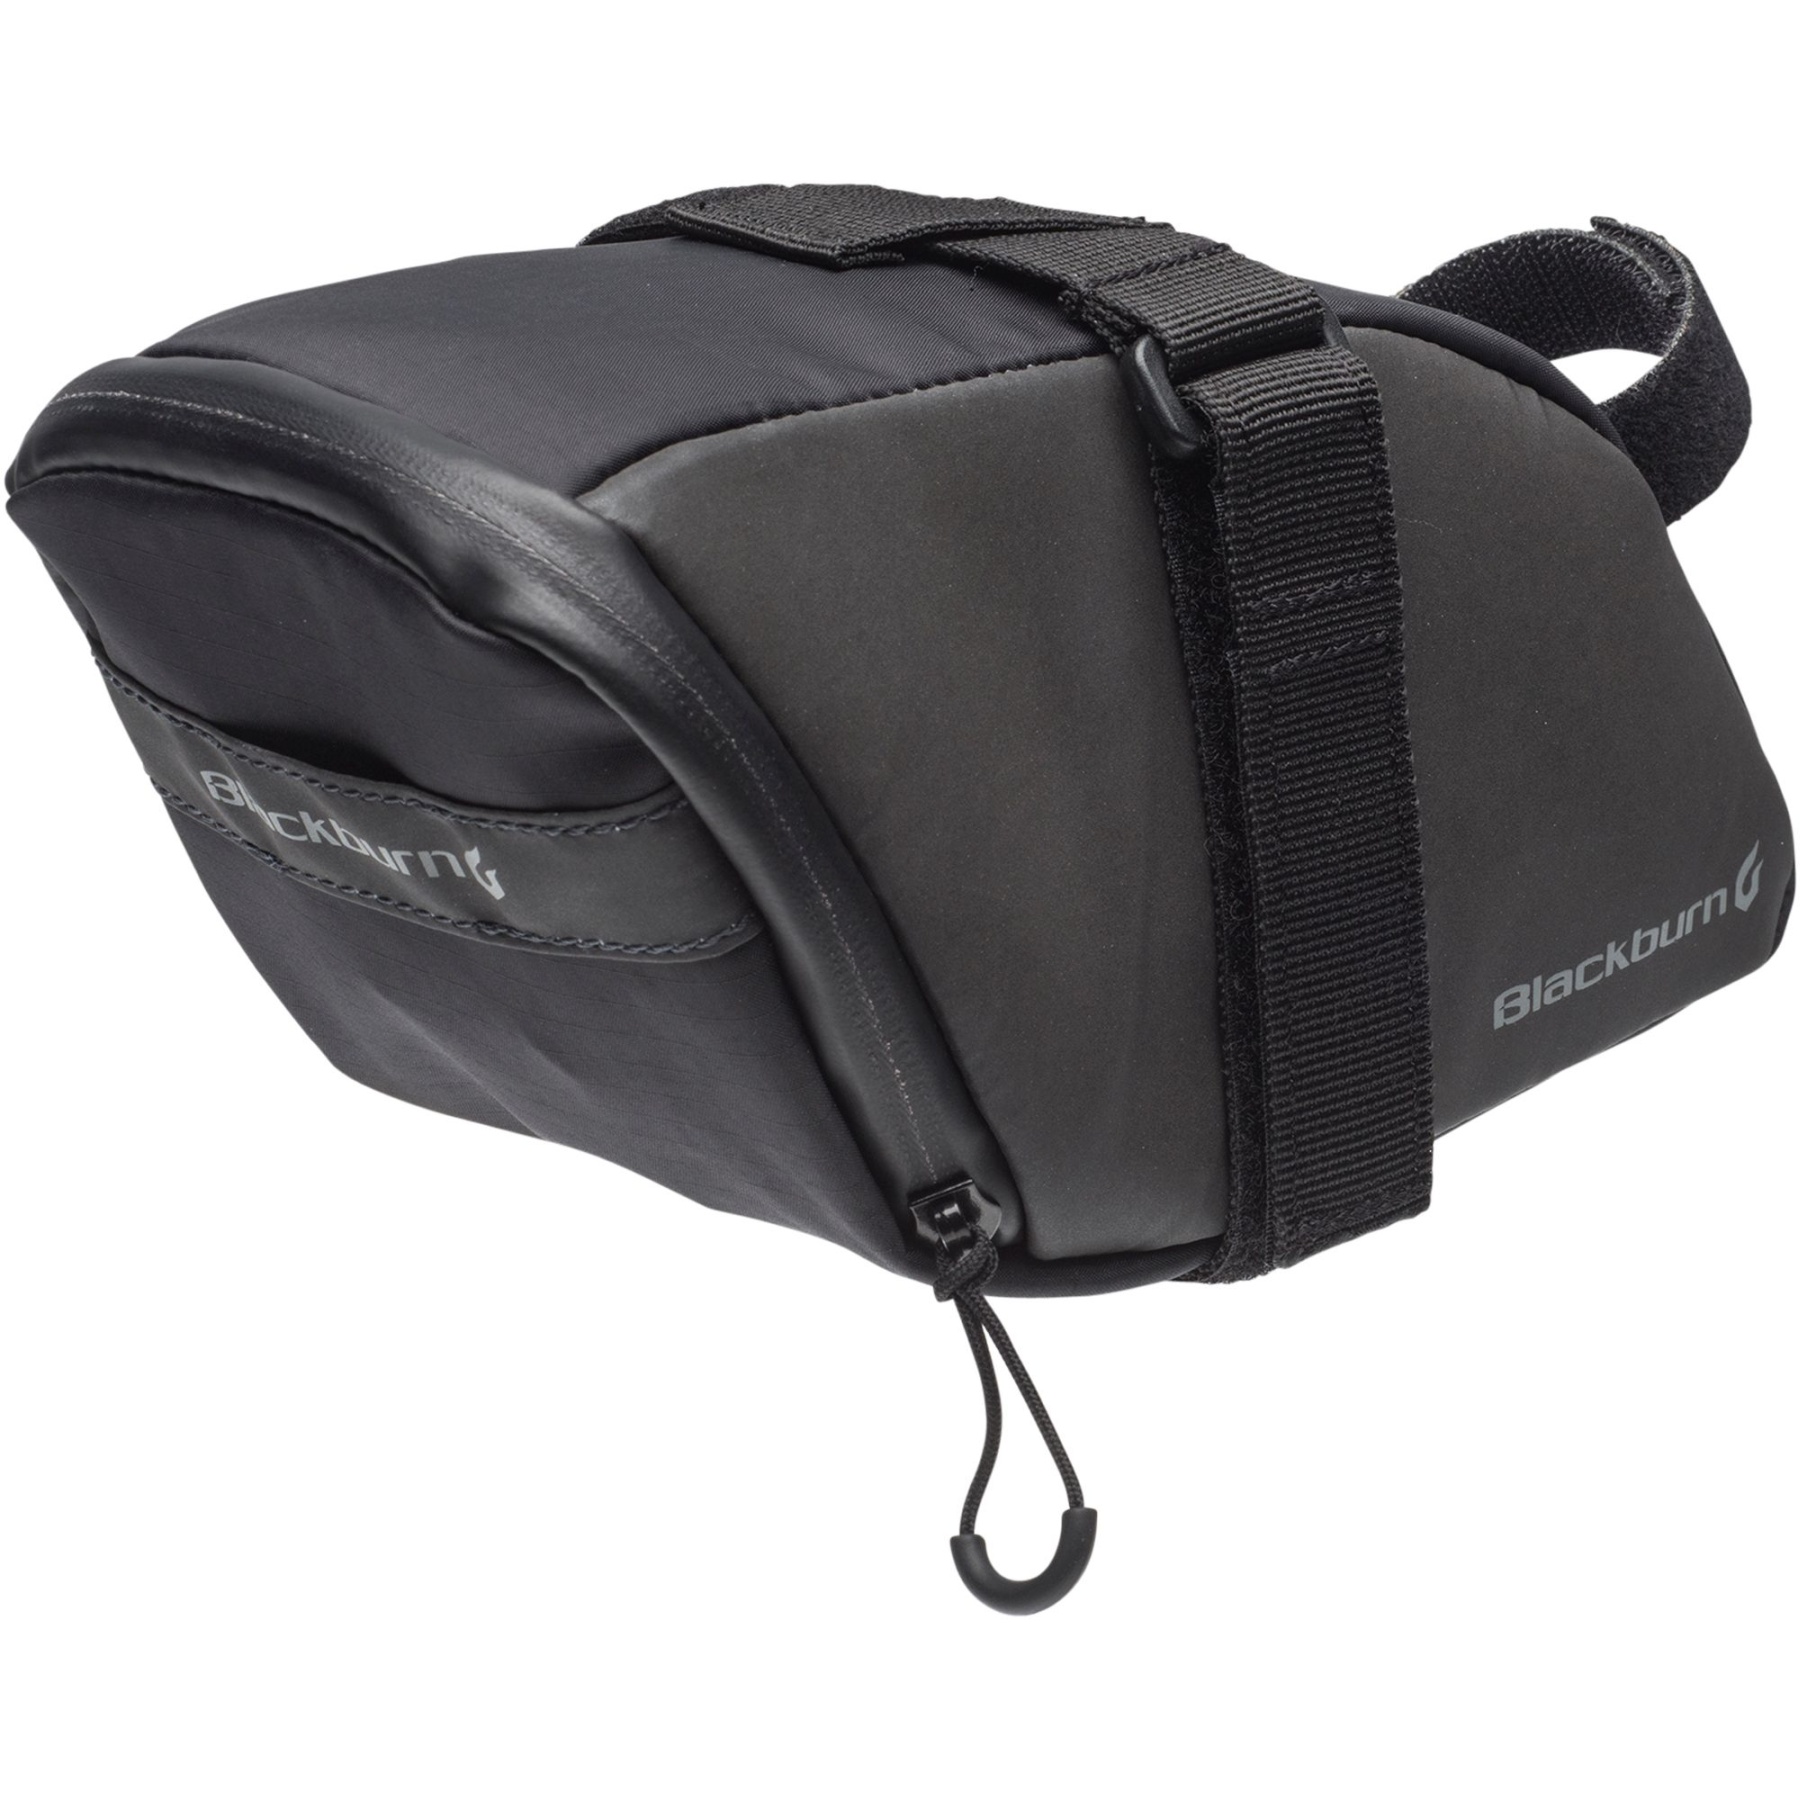 Bild von Blackburn Grid Large Seat Bag Satteltasche - black reflective